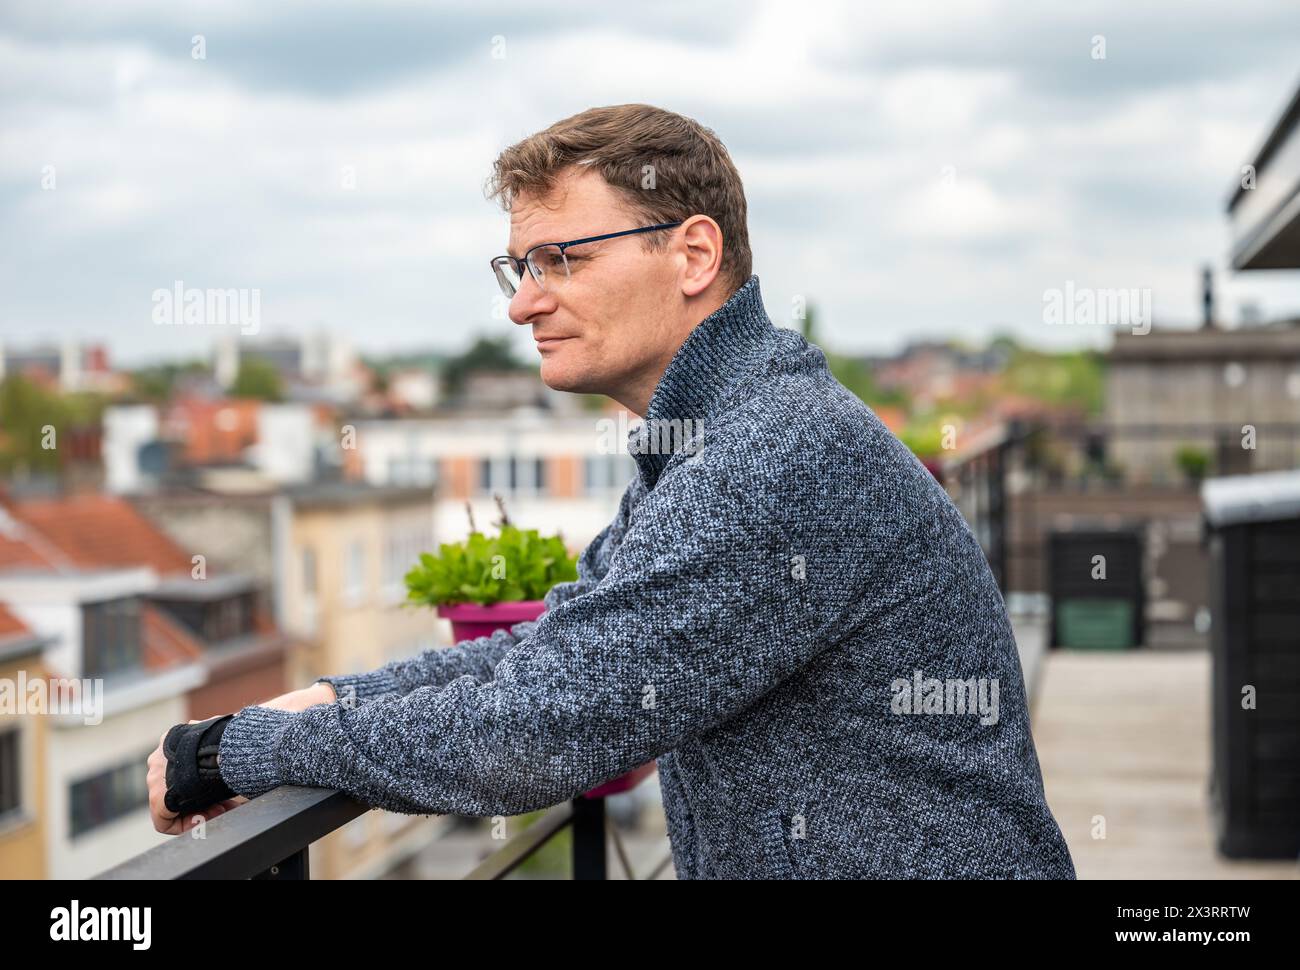 Portrait d'un homme d'affaires de 45 ans à l'extérieur, Bruxelles, Belgique. Autorisation du modèle. Banque D'Images